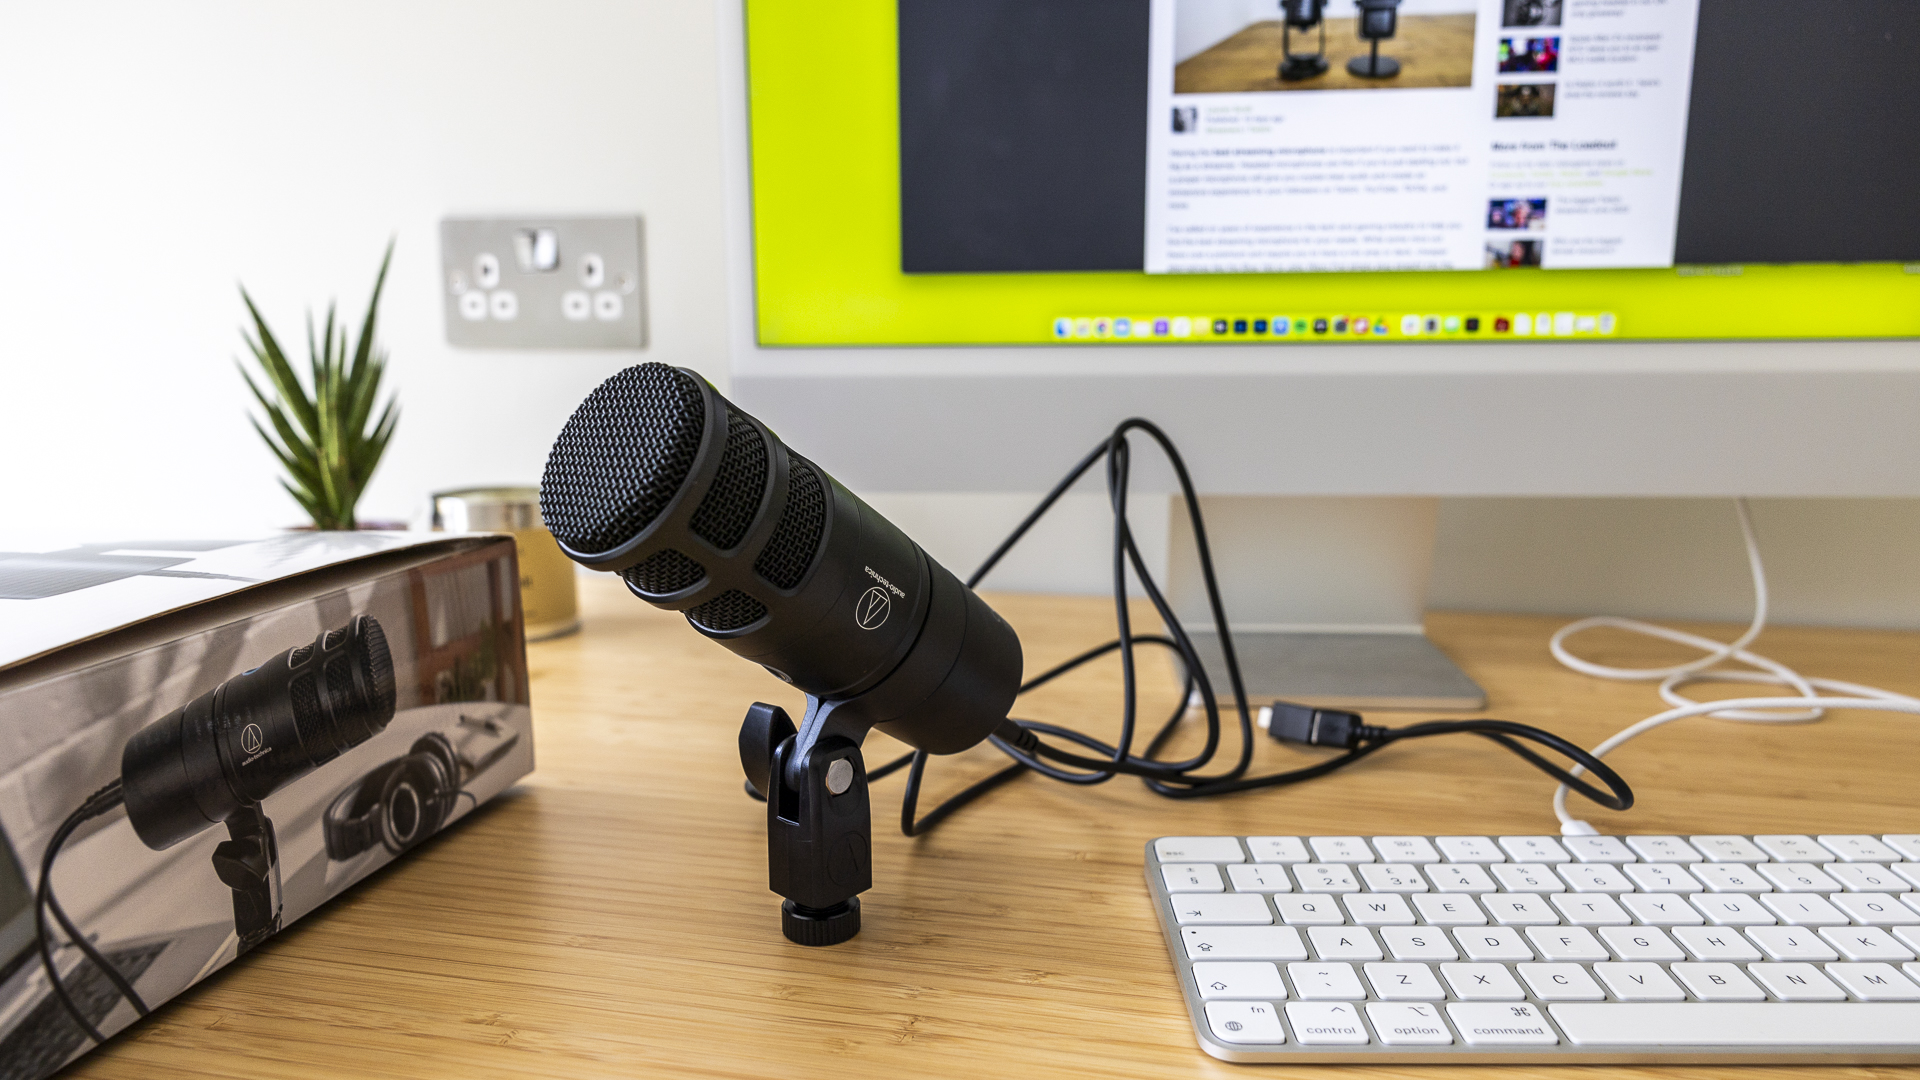 Image de revue Audio Technica montrant le microphone sur le bureau de quelqu'un à proximité d'une boîte et d'un clavier.